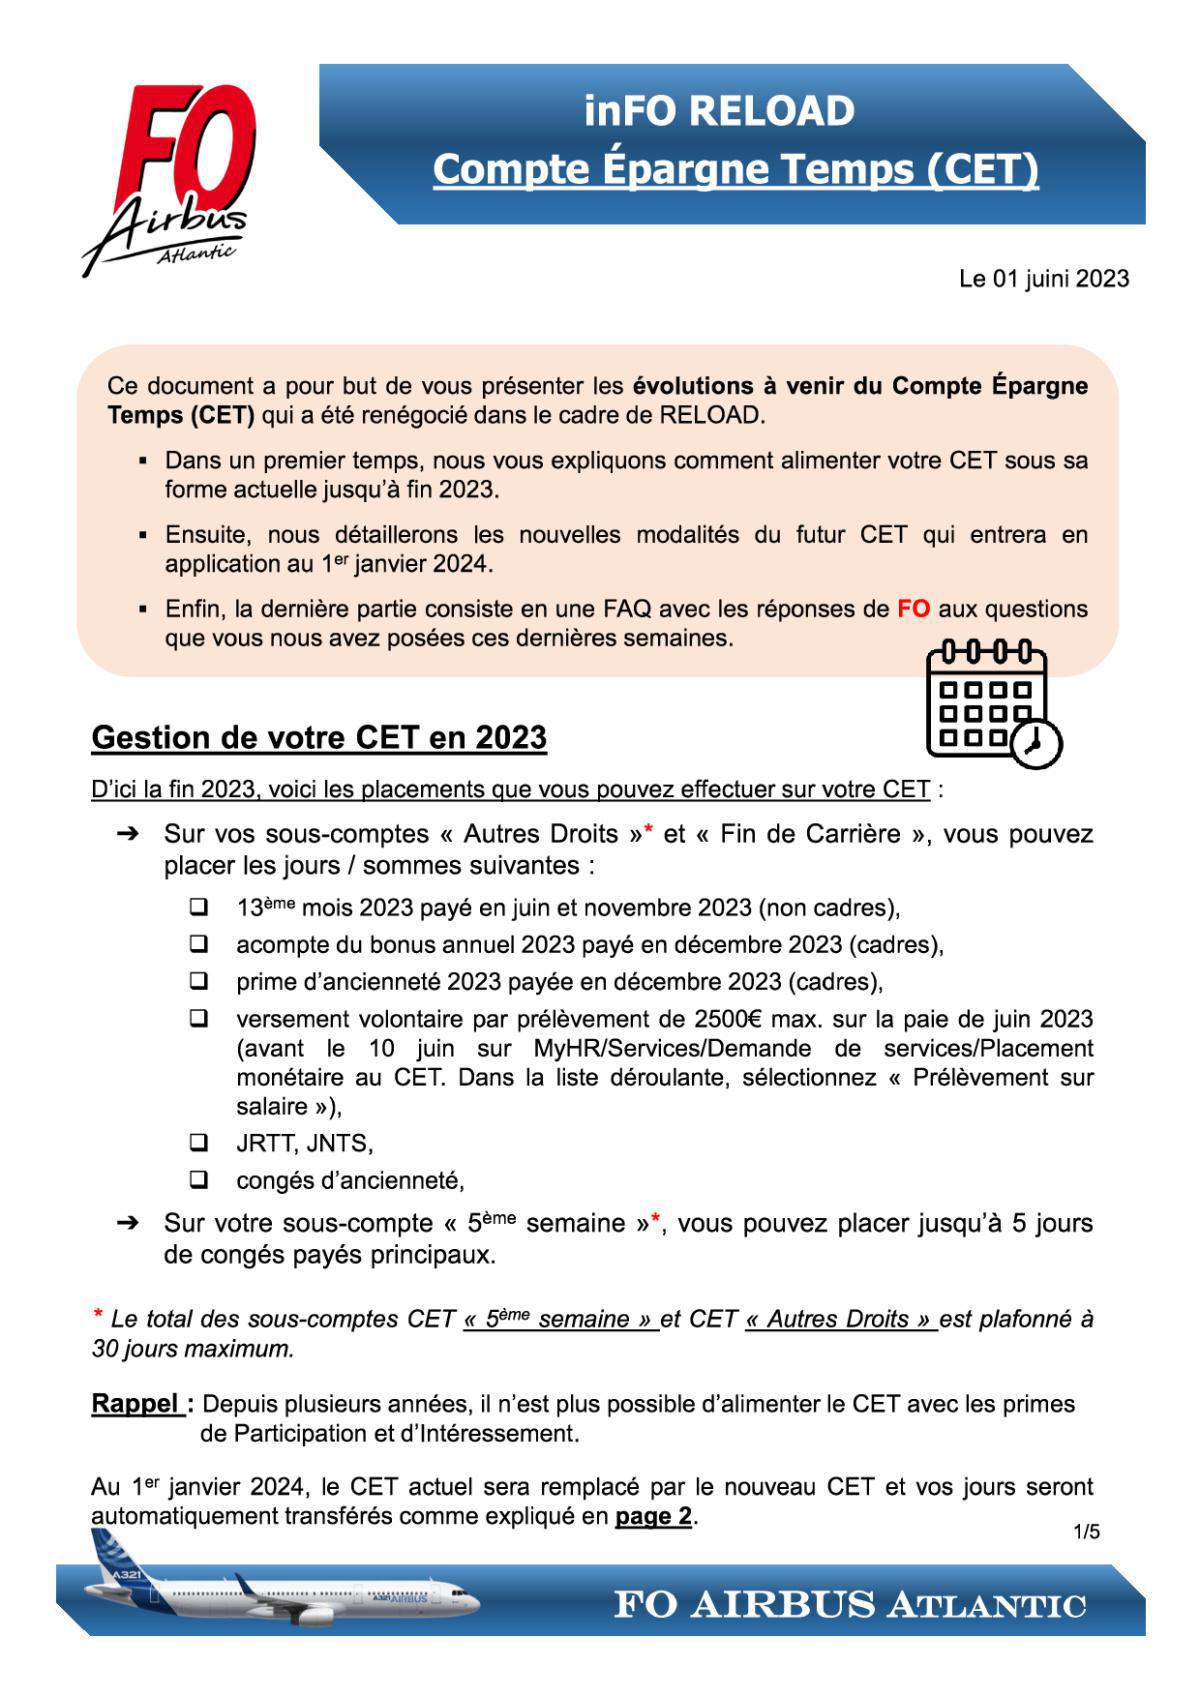 inFO RELOAD – Compte Epargne Temps (CET)